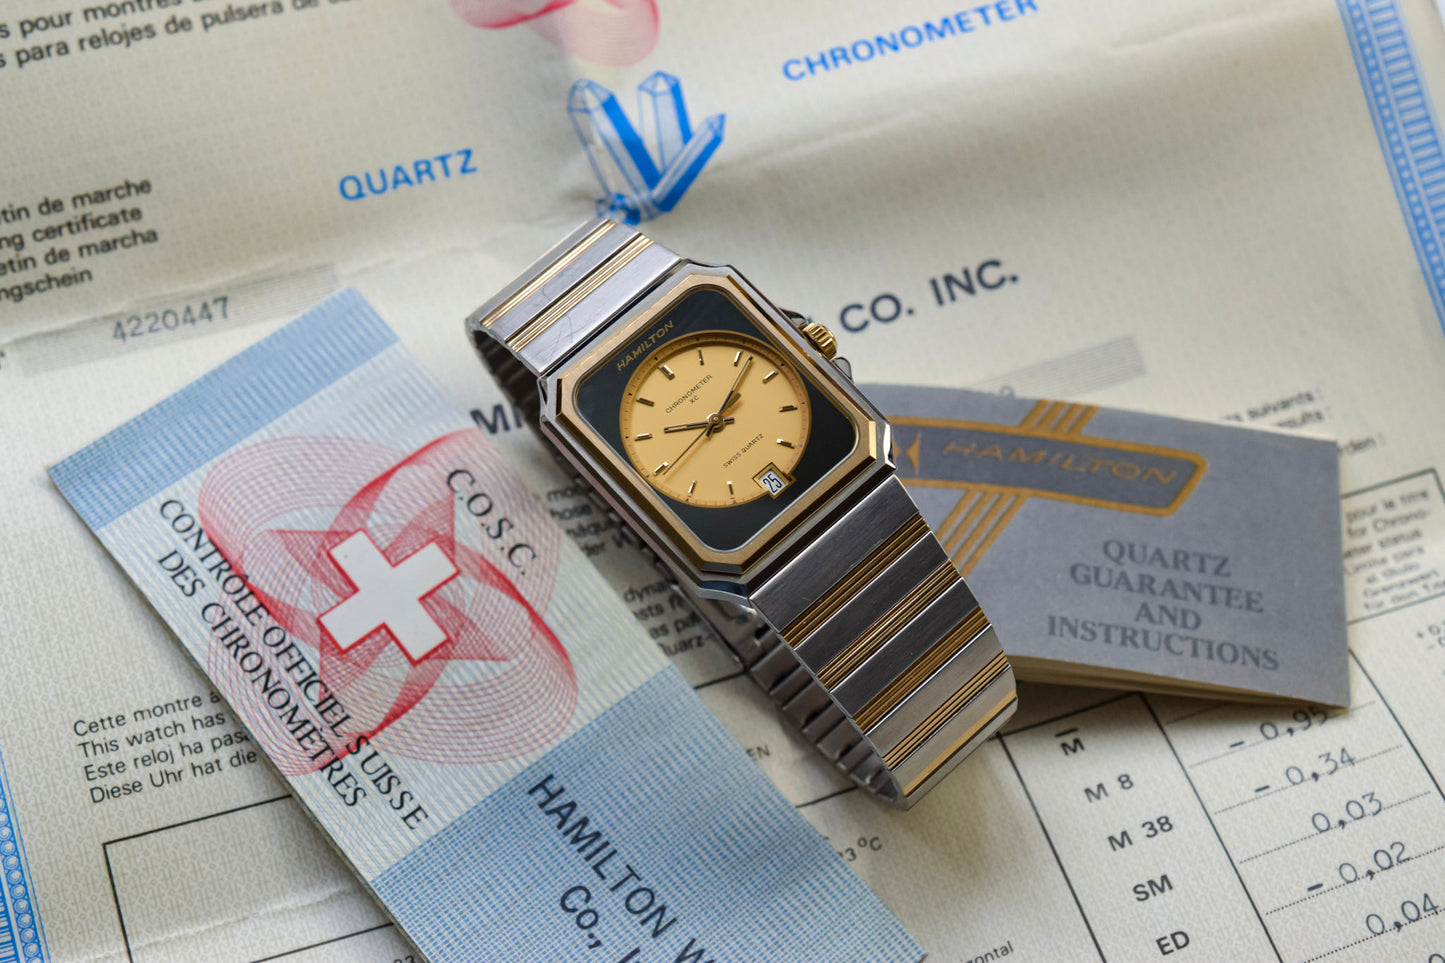 Hamilton Quartz Chronometer XC Octo - Full Set and COSC Certificate